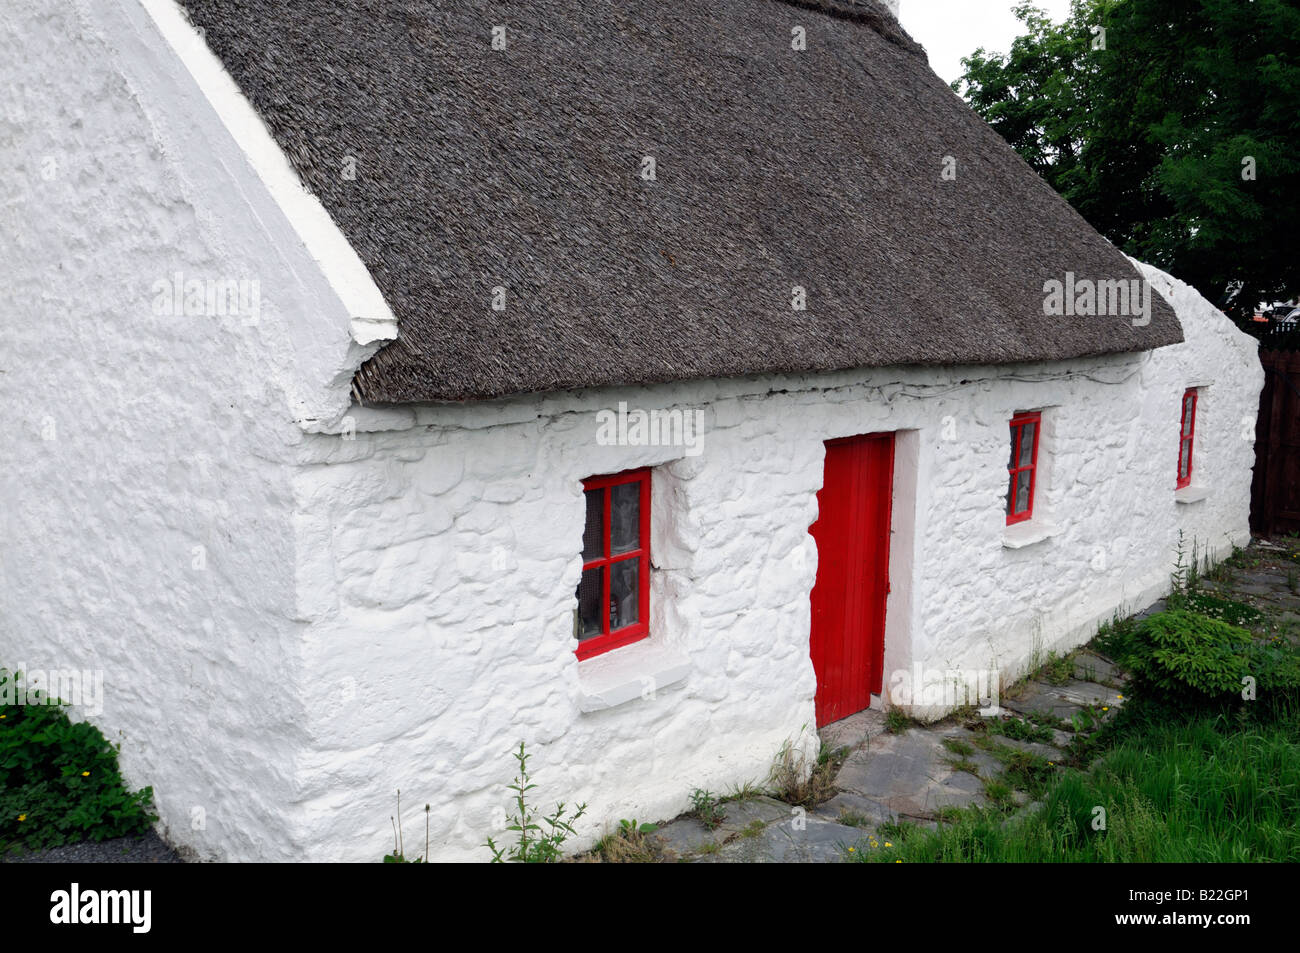 Cottage au toit de chaume avec porte en bois peint rouge et le cadre de la fenêtre maison traditionnelle en pierre peint en blanc Banque D'Images